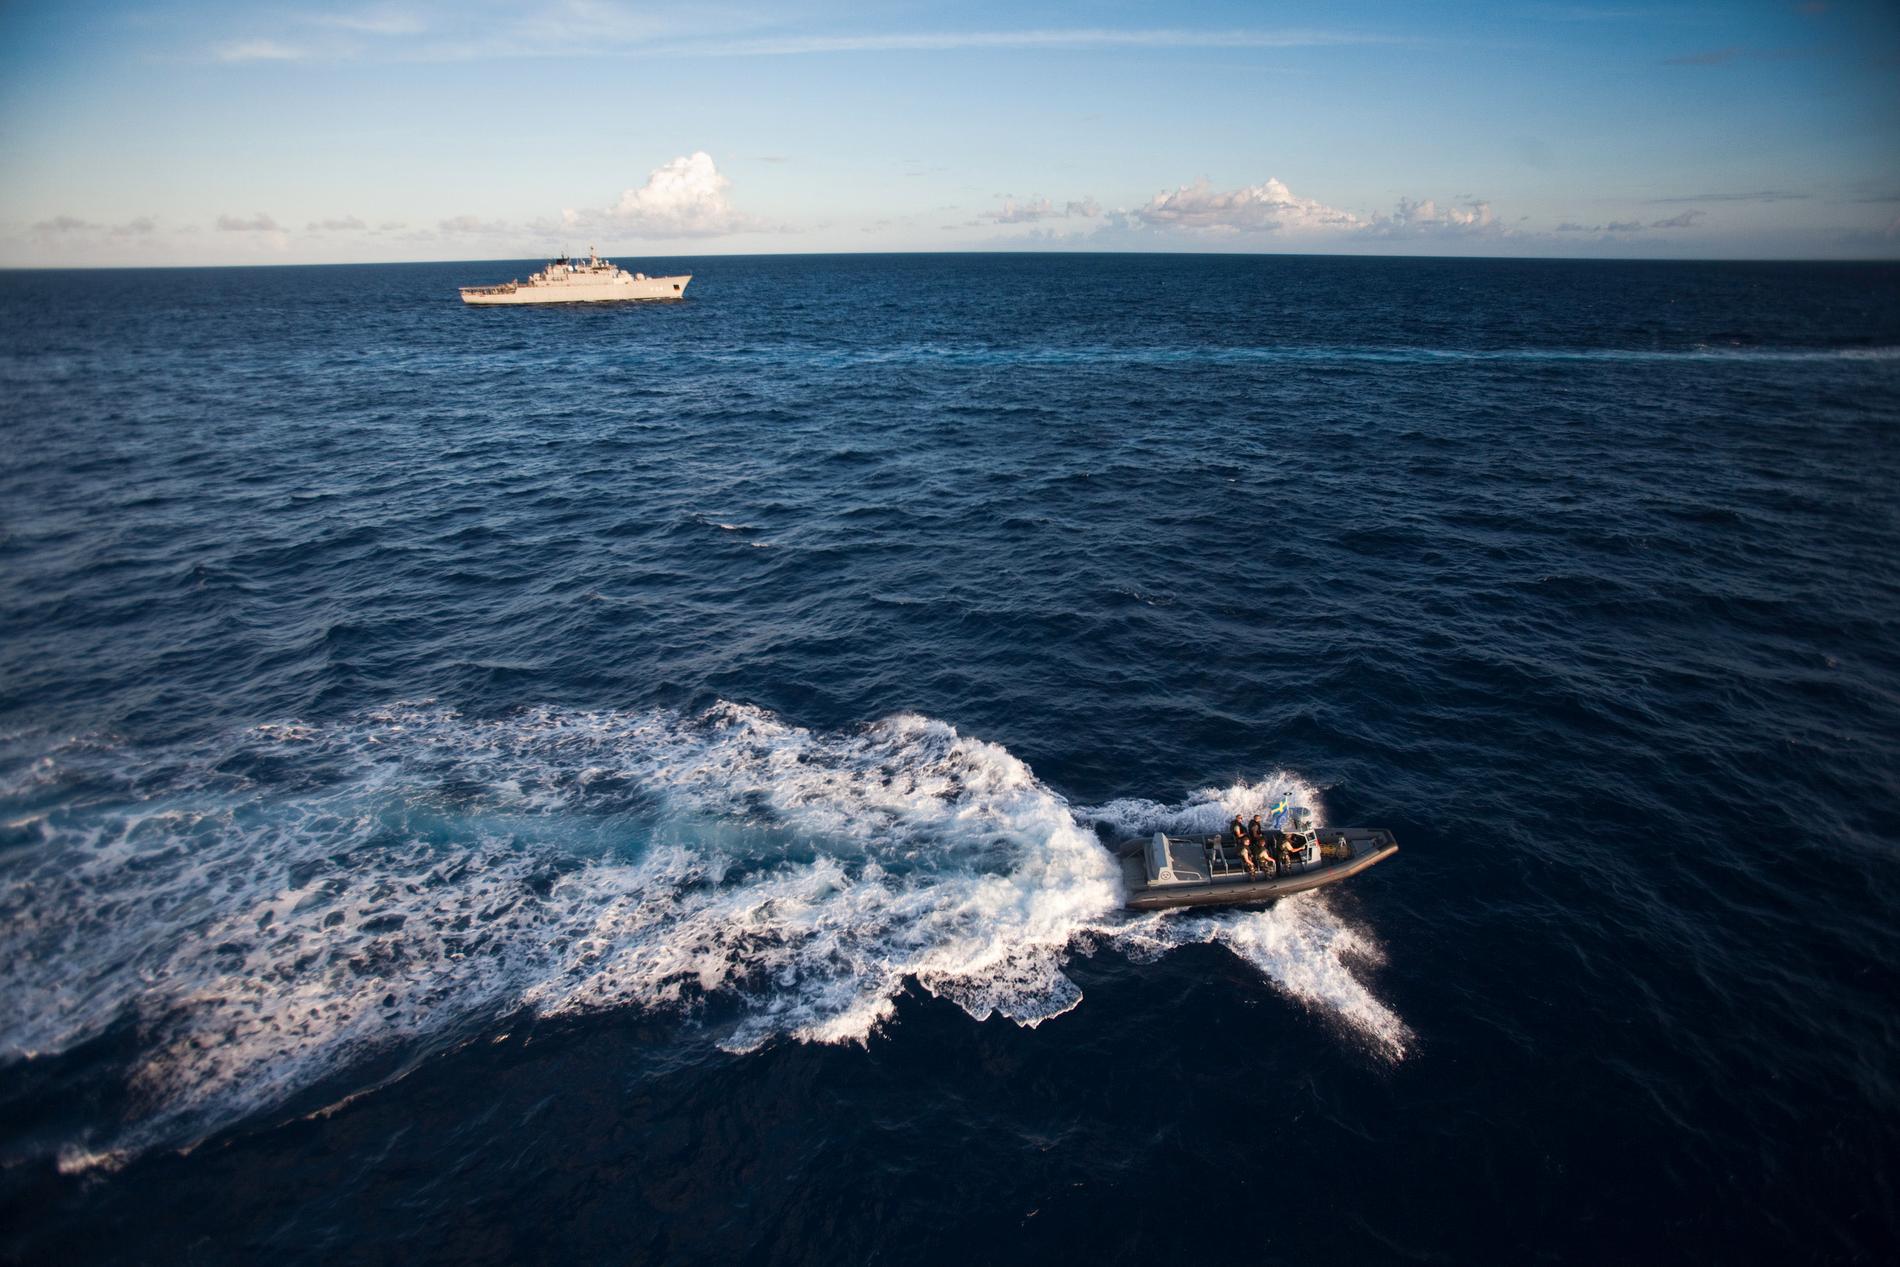 Antalet attacker mot fartyg, och kidnappningar utanför Somalias kust, har minskat kraftigt sedan bland annat internationella styrkor, som HMS Carlskrona, patrullerat havet. Många hålls fortfarande som gisslan, en iransk fiskare har precis släppts på grund av sjukdom efter fyra års fångenskap. Arkivbild.